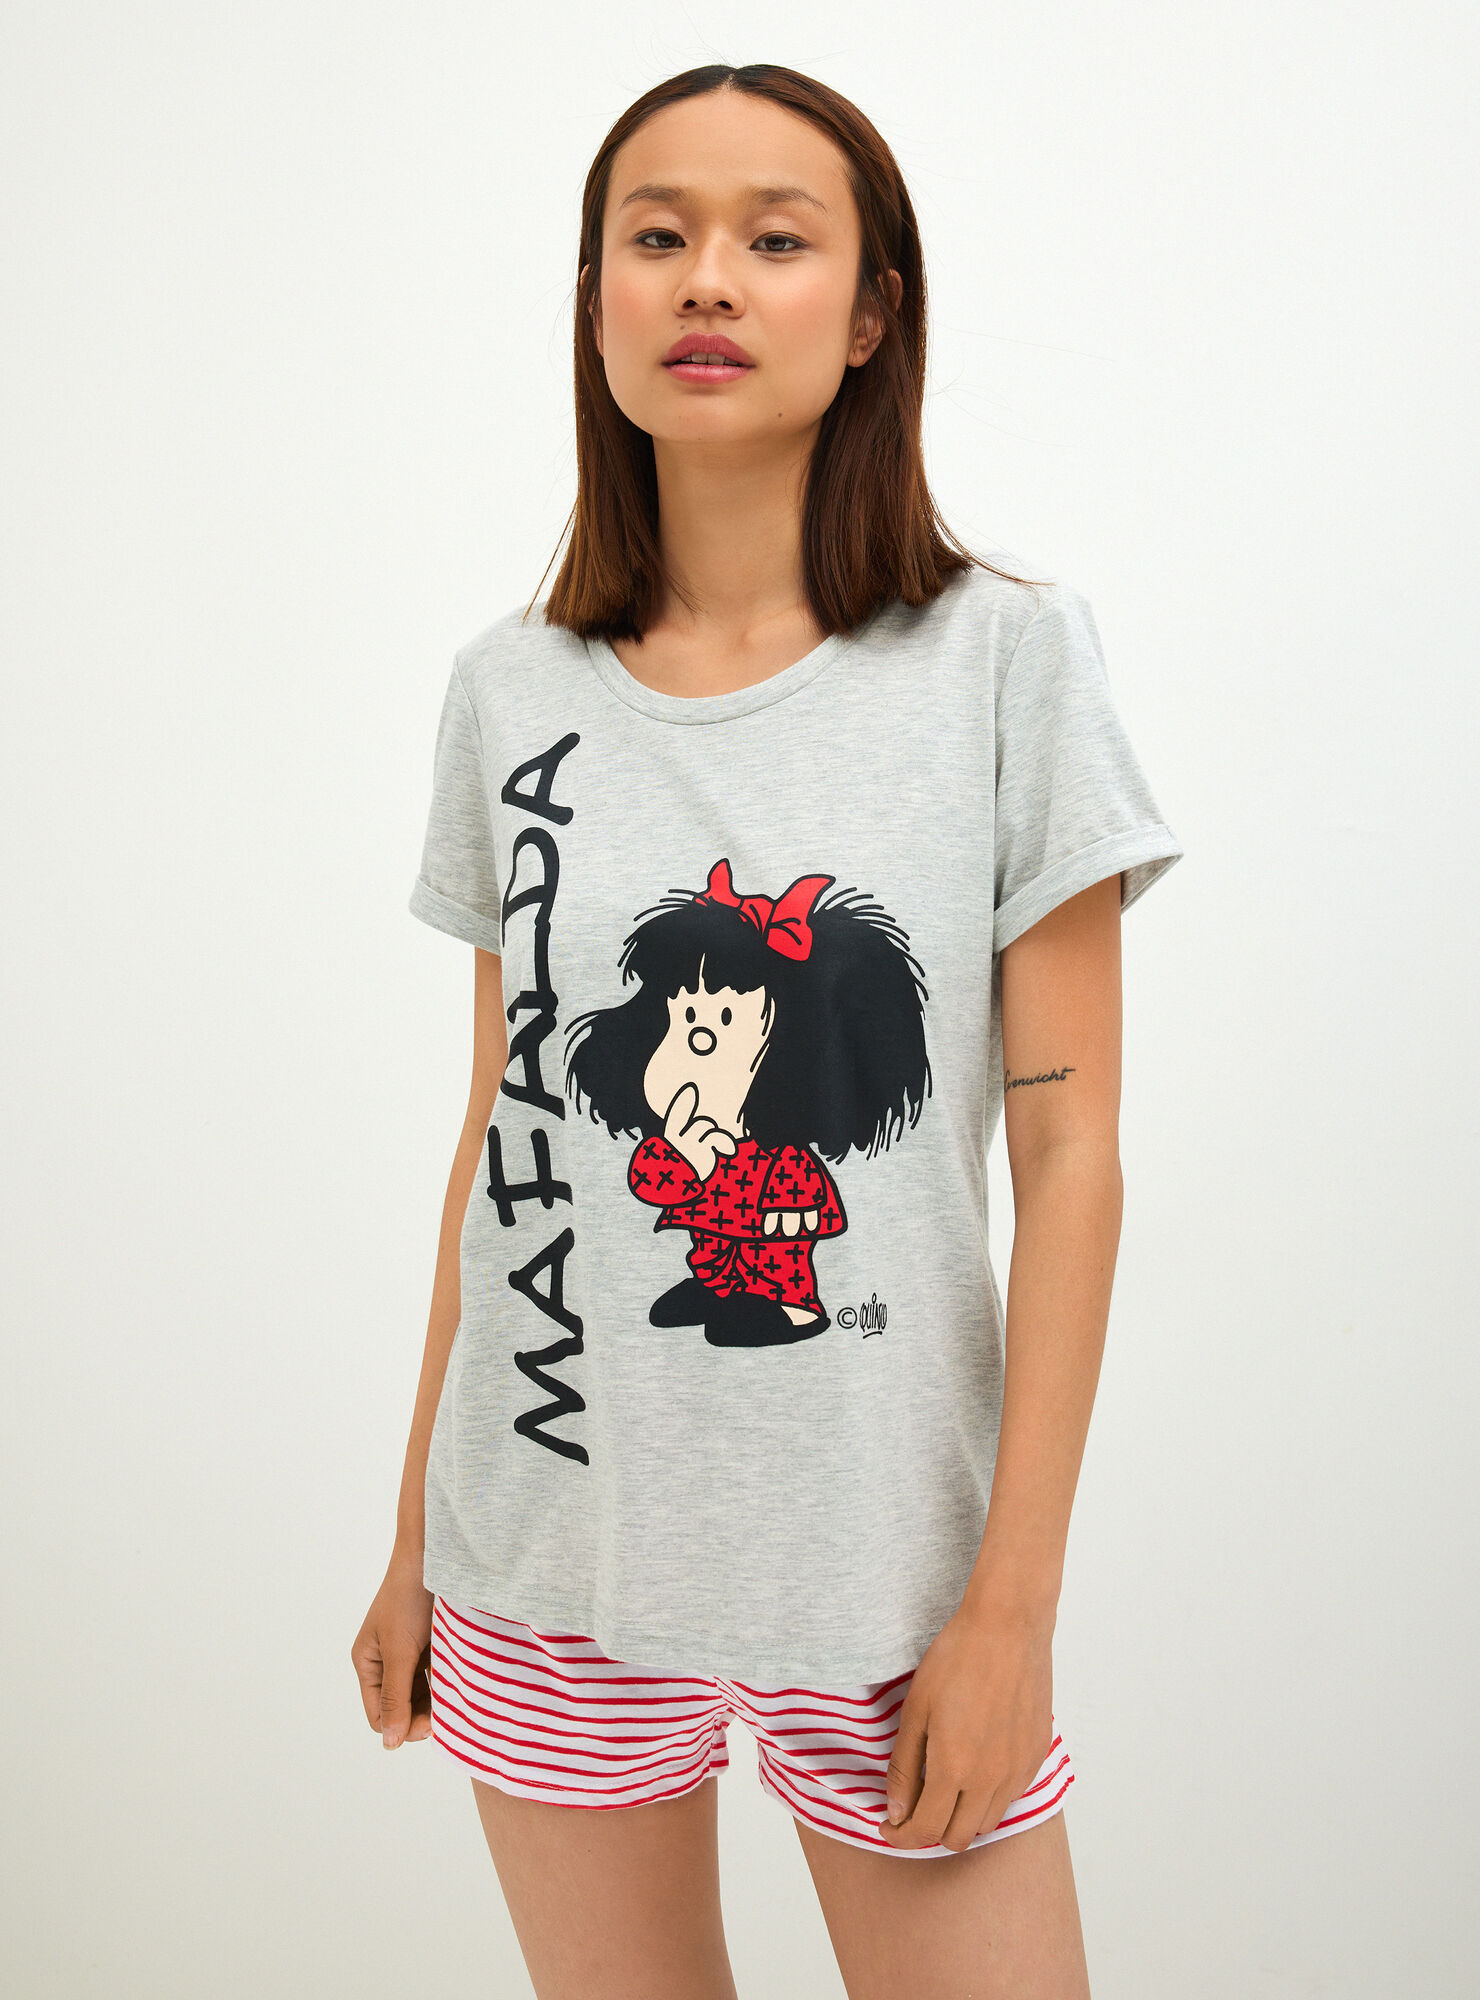 Mafalda \Clásica\" - Pijamas | Paris.cl